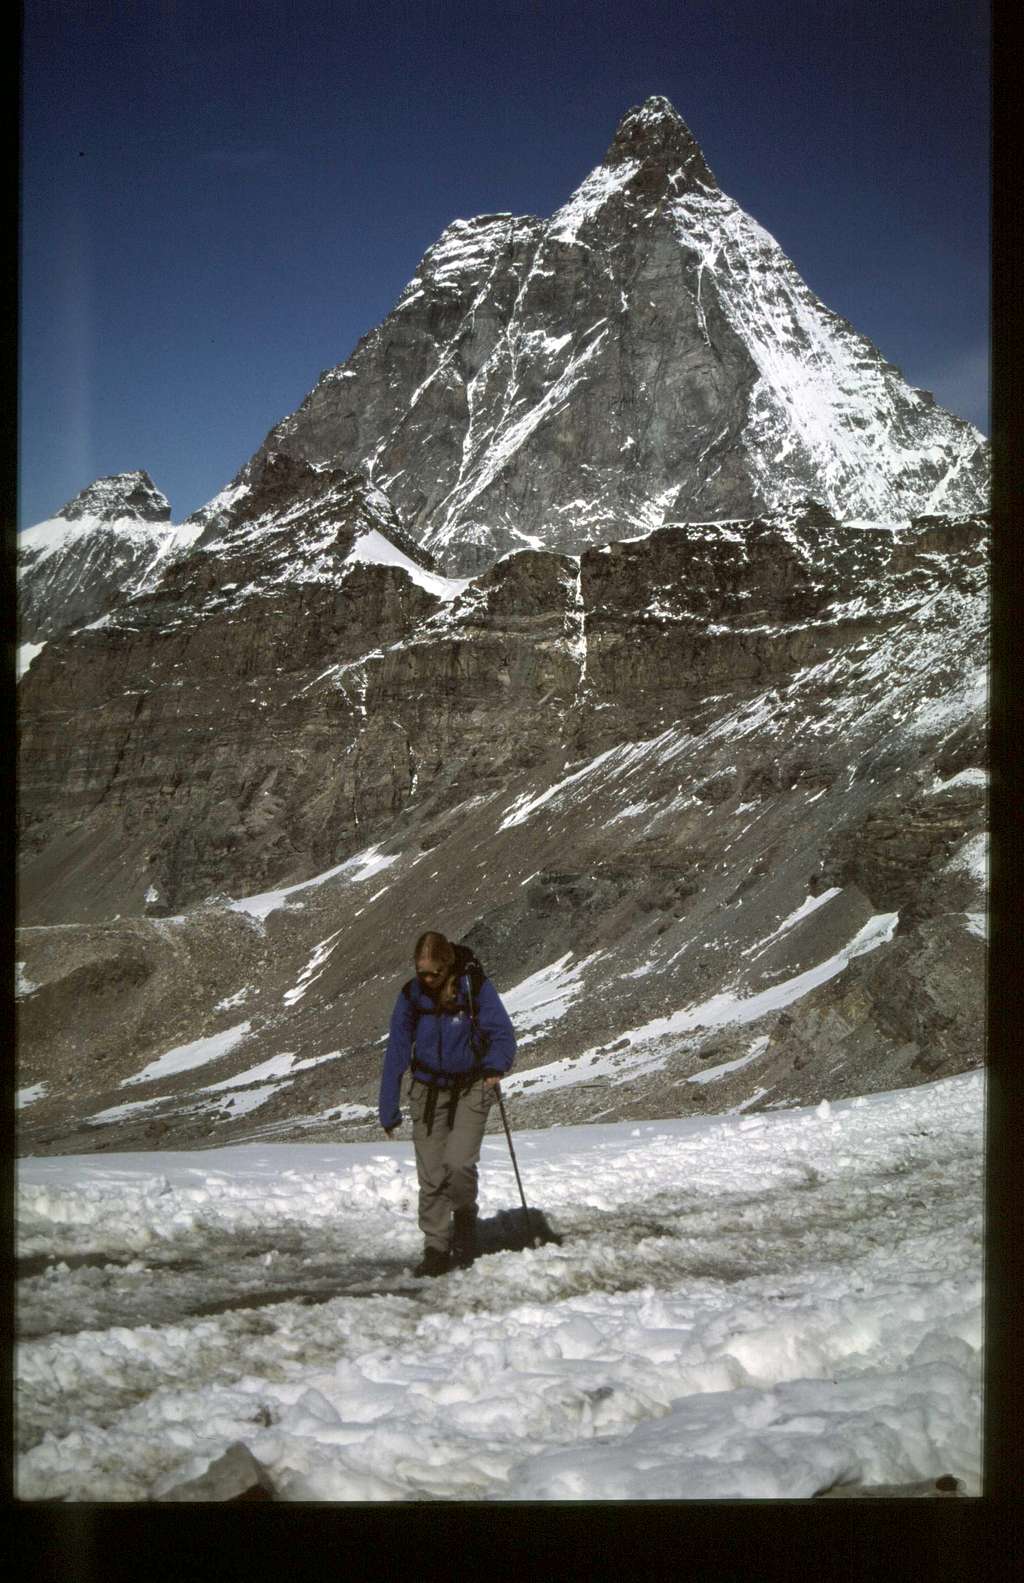 Anne and Matterhorn